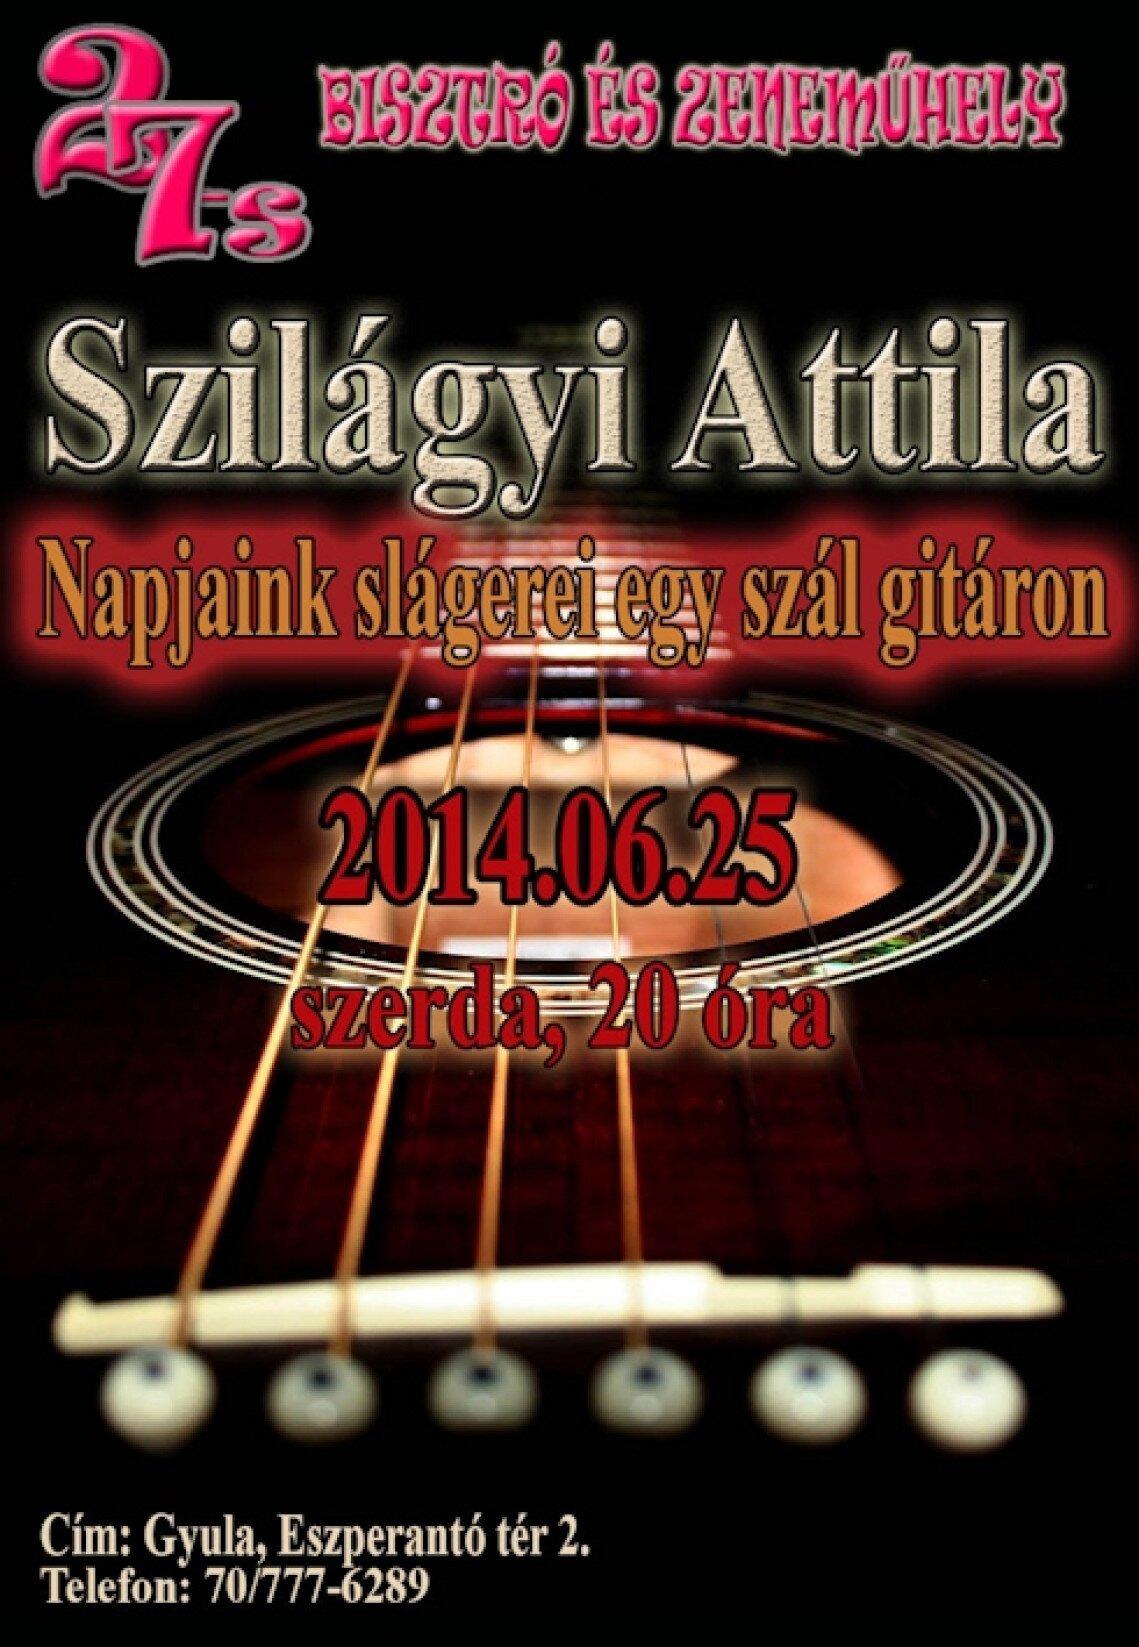 szilagyi-attila-koncert-plakat.jpg